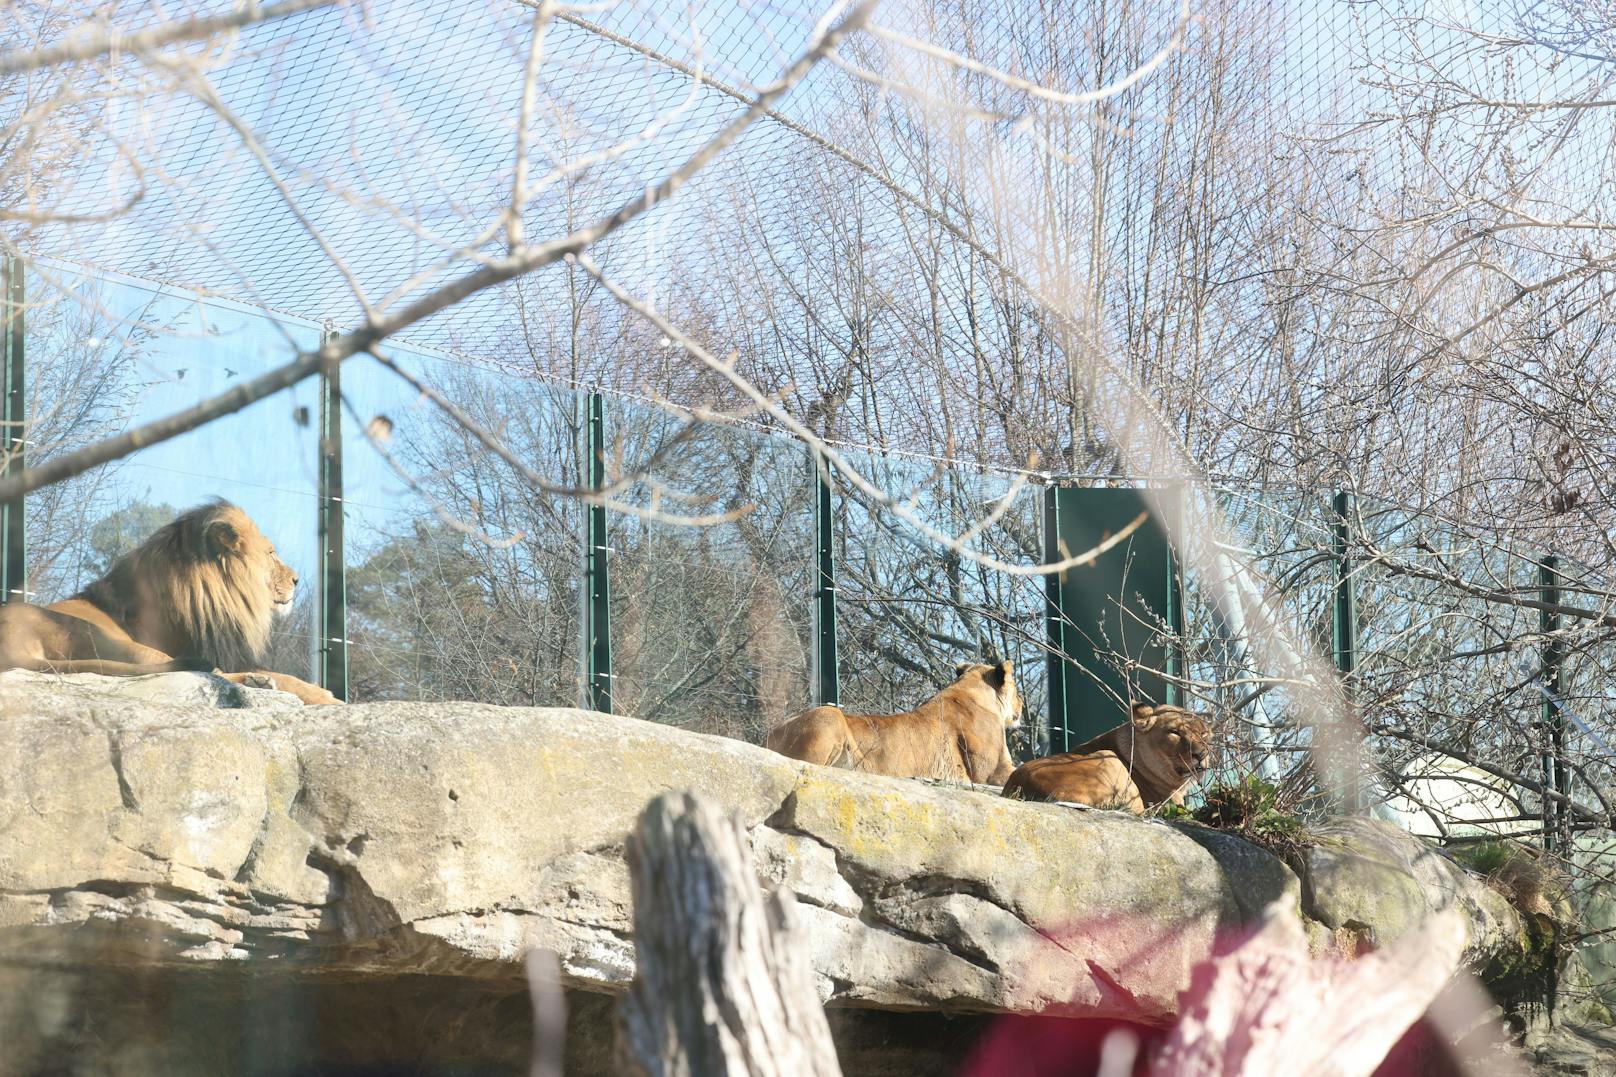 Die beiden Löwinnen Malawi und Malindi und der Löwe Kijogo im Tiergarten Schönbrunn sollen bald ein neues Gehege bekommen.